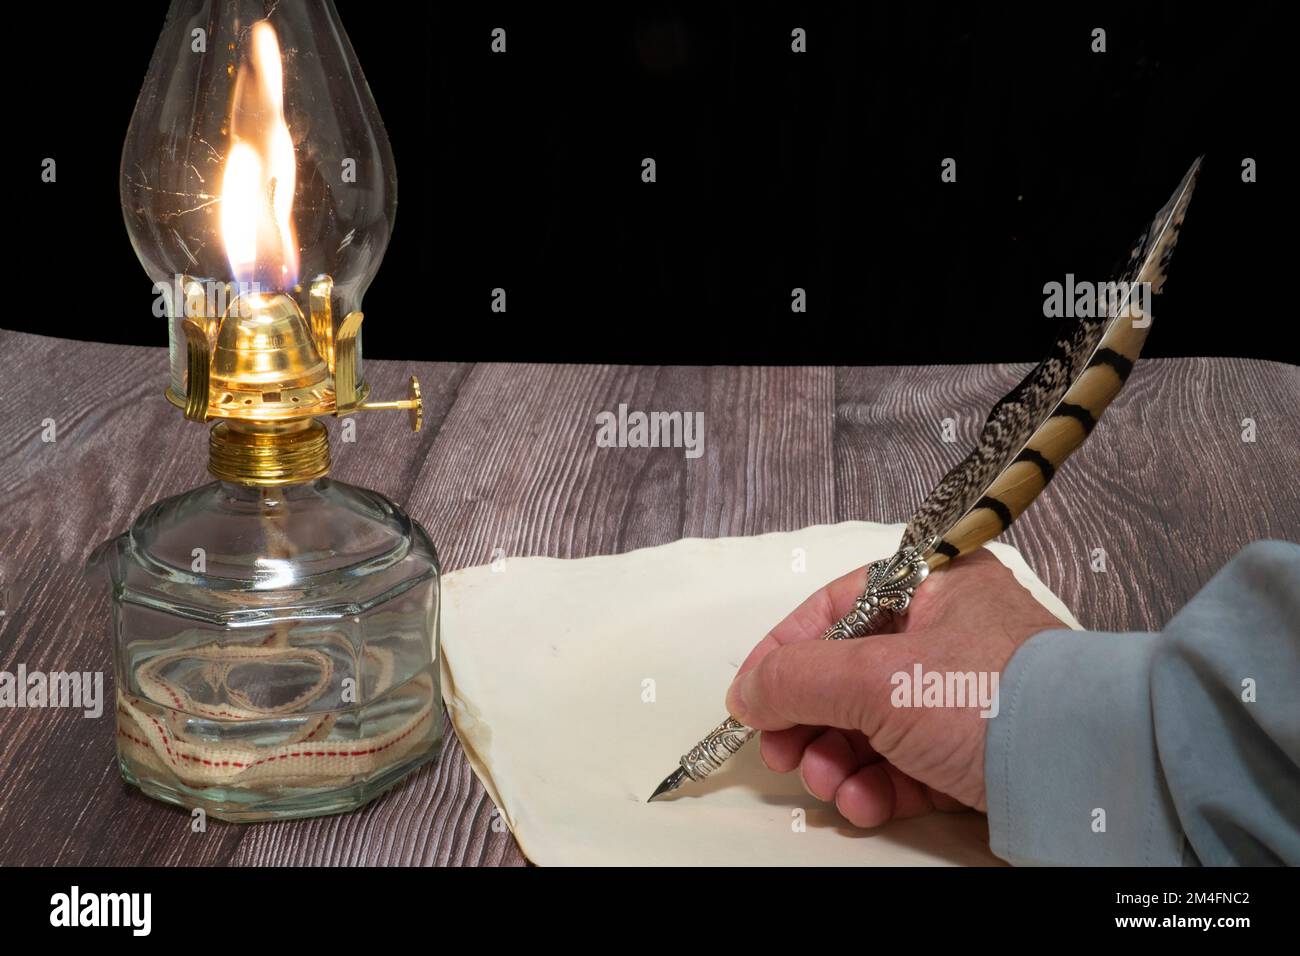 Nahaufnahme einer Öllampe und einer Person, die mit einem Kugelschreiber auf dem Papier schreibt Stockfoto